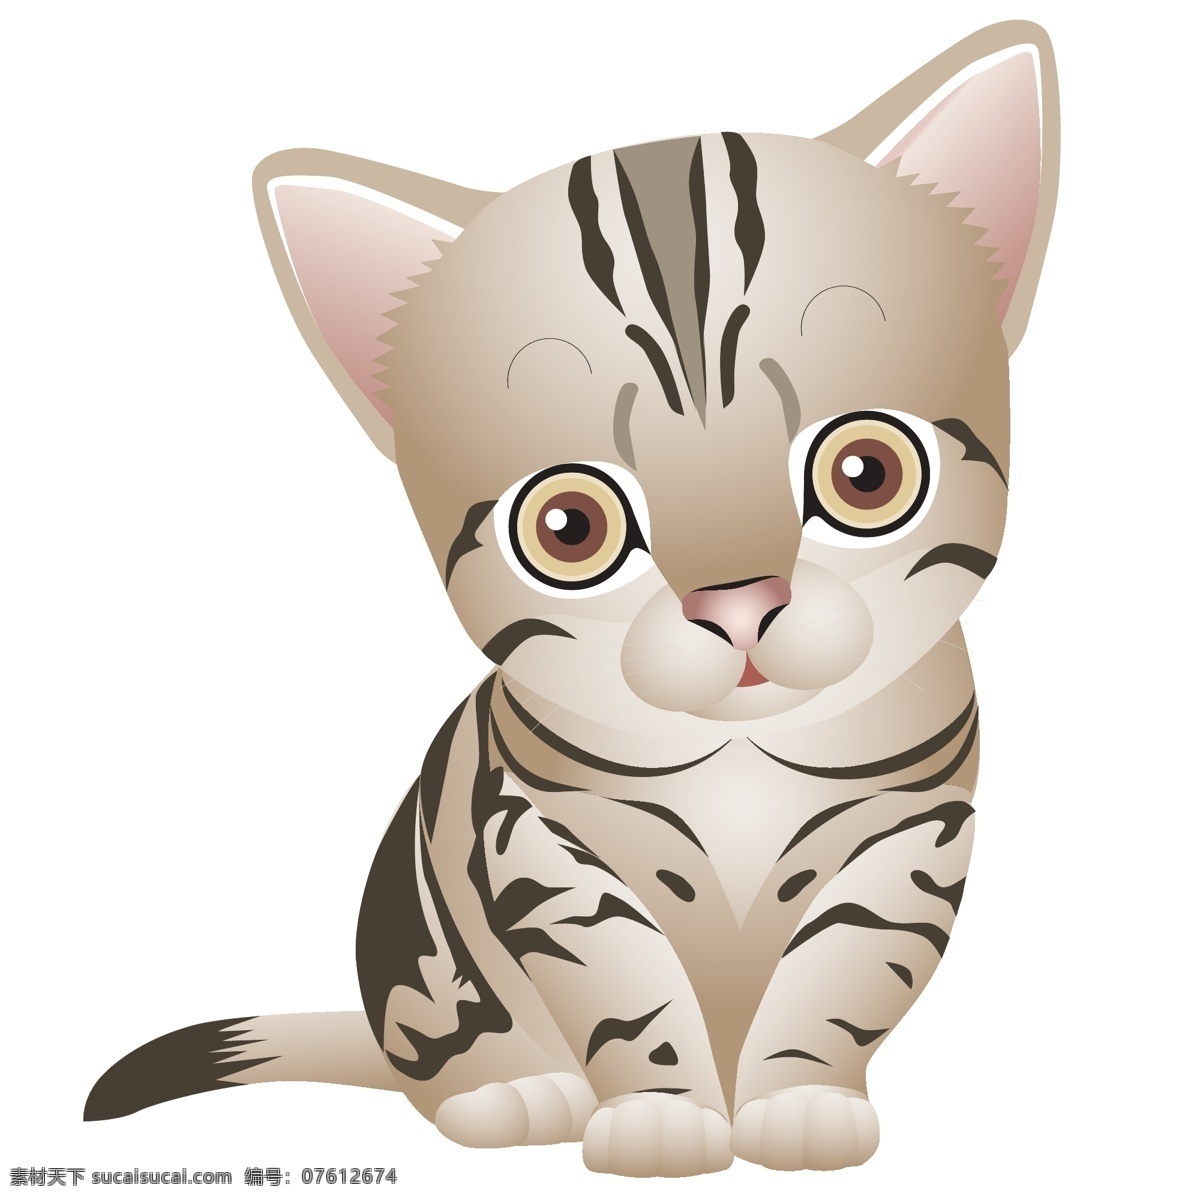 小猫 动物 可爱猫 猫咪 卡通 手绘画 插画设计 矢量卡通设计 矢量 其他生物 生物世界